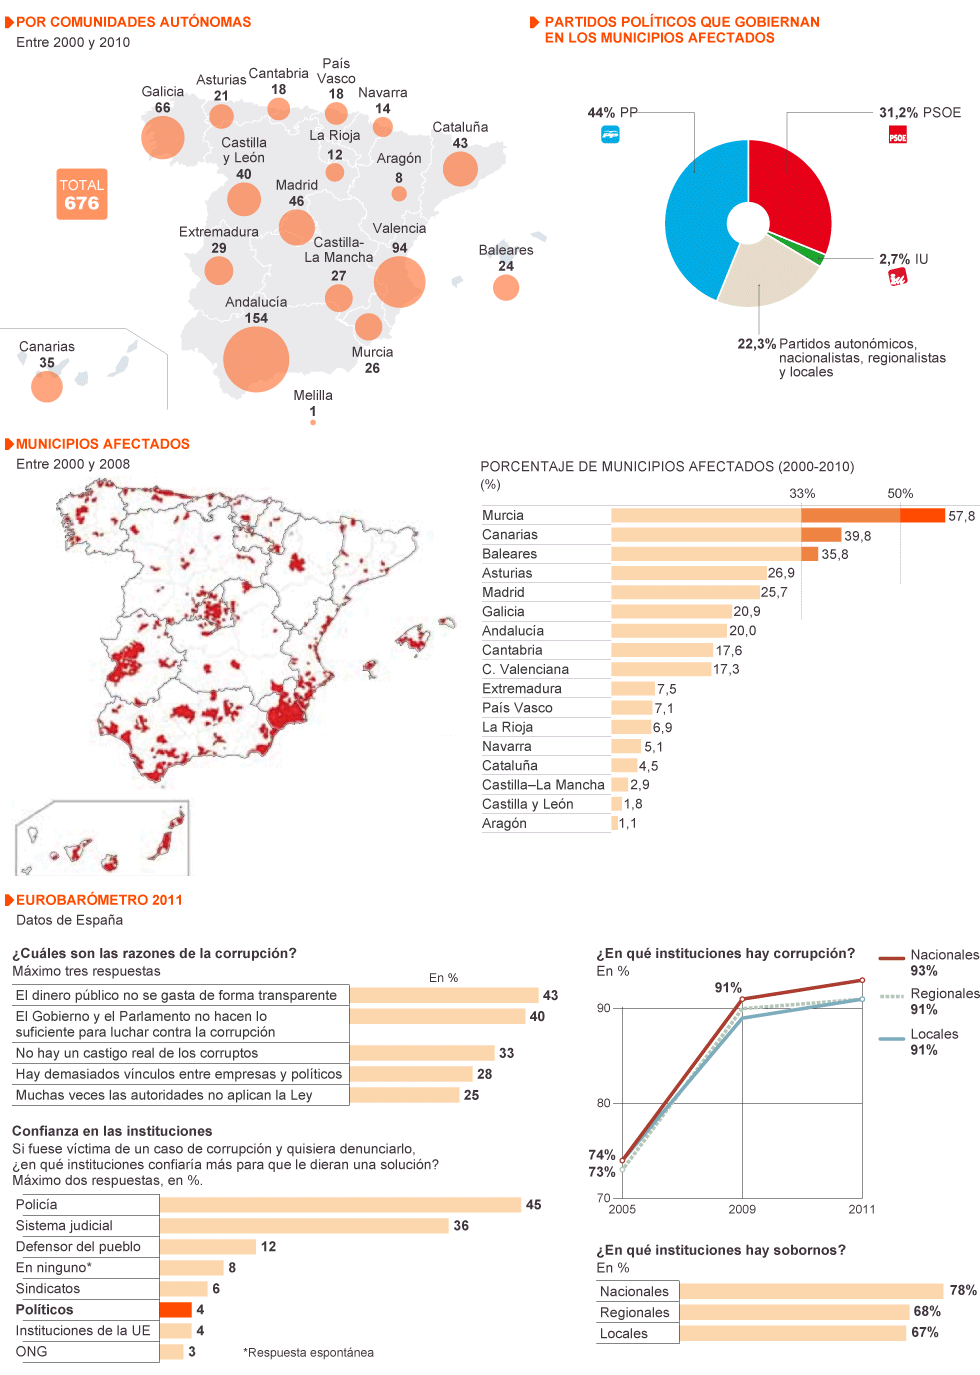 Corruptódromo : Mapa de Corrupción por Partidos Políticos 1371457873_932054_1371458031_noticia_normal